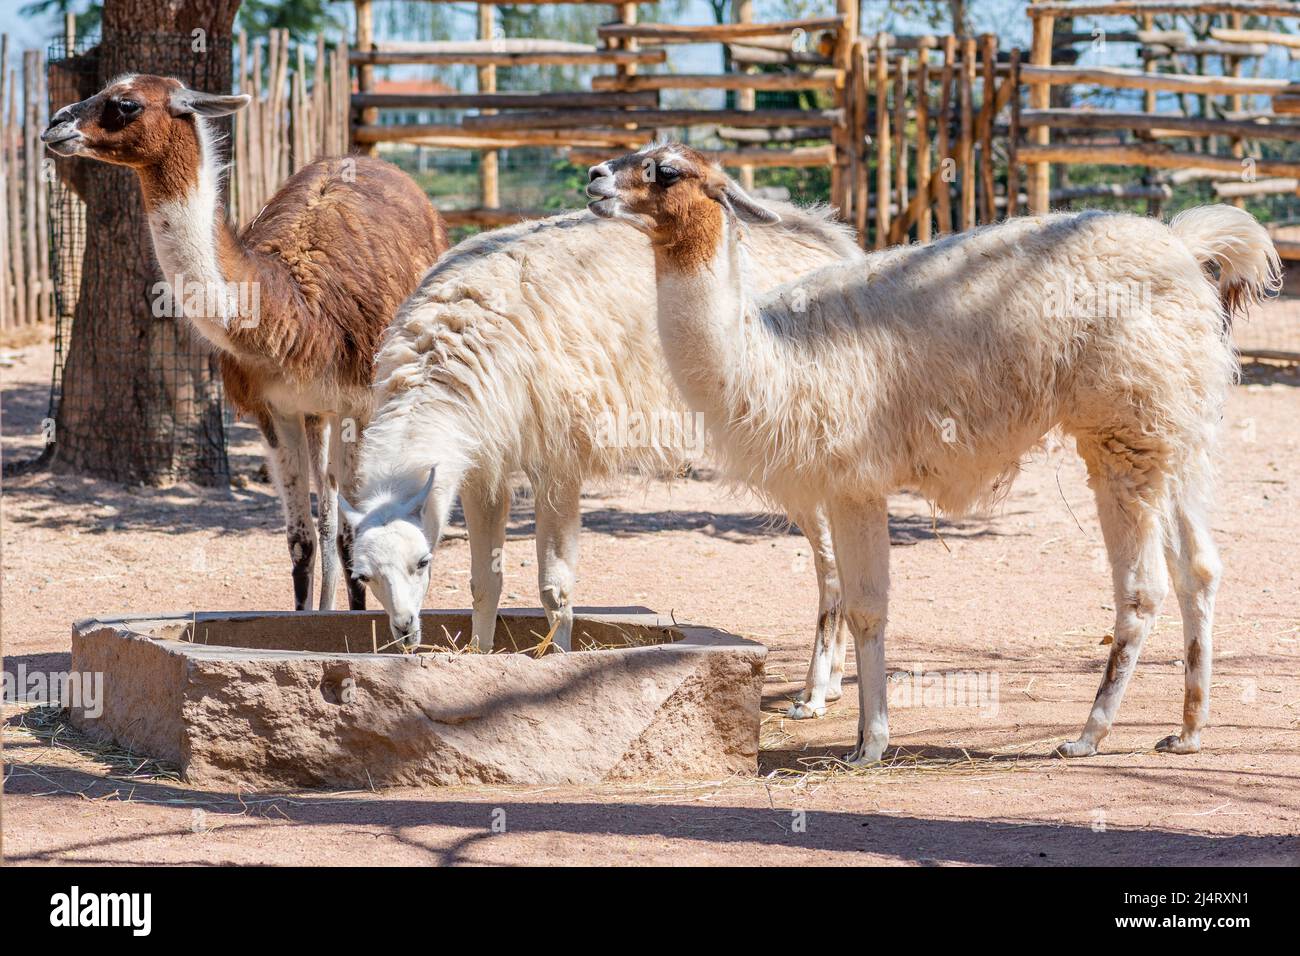 llama, camelide sudamericana addomesticata, ampiamente utilizzata come animale da carne e impacco dalle culture andine fin dall'era precolombiana in una fattoria Foto Stock